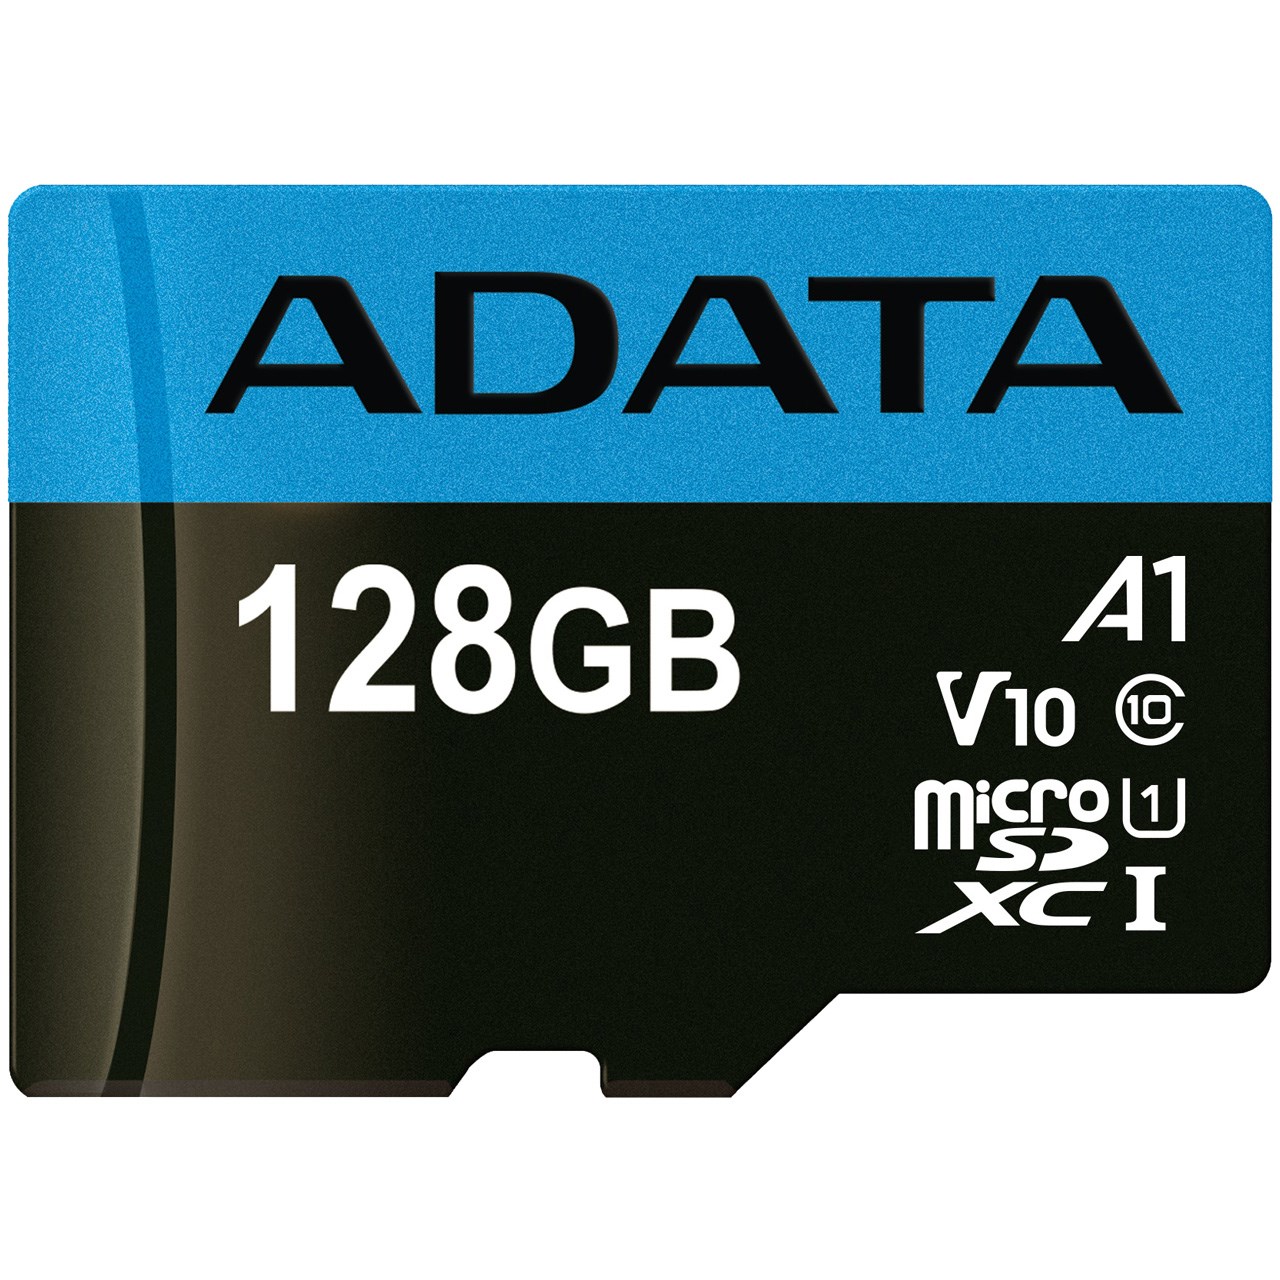 کارت حافظه microSDXC ای دیتا مدل Premier V10 A1 کلاس 10 استاندارد UHS-I سرعت 85MBps ظرفیت 128 گیگابایت